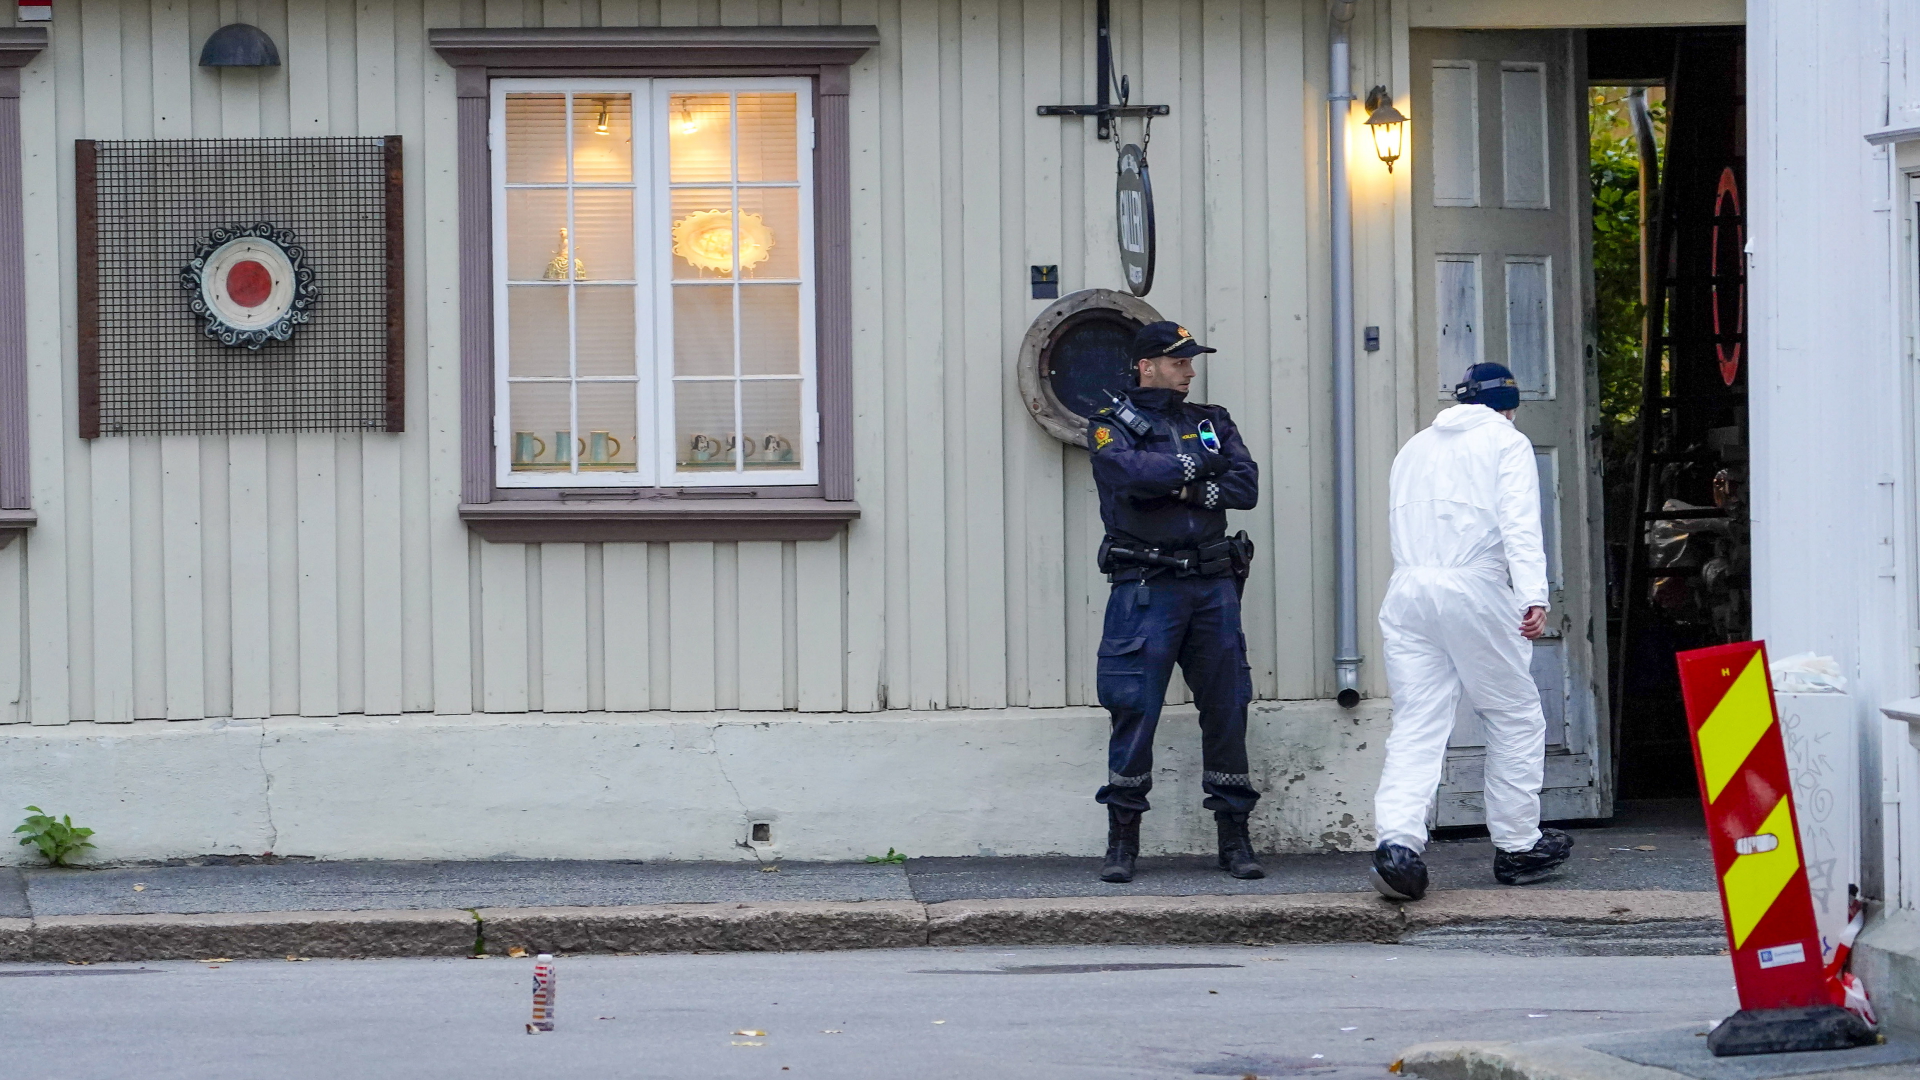 Polizei bei forensischen Untersuchungen in Kongsberg | EPA